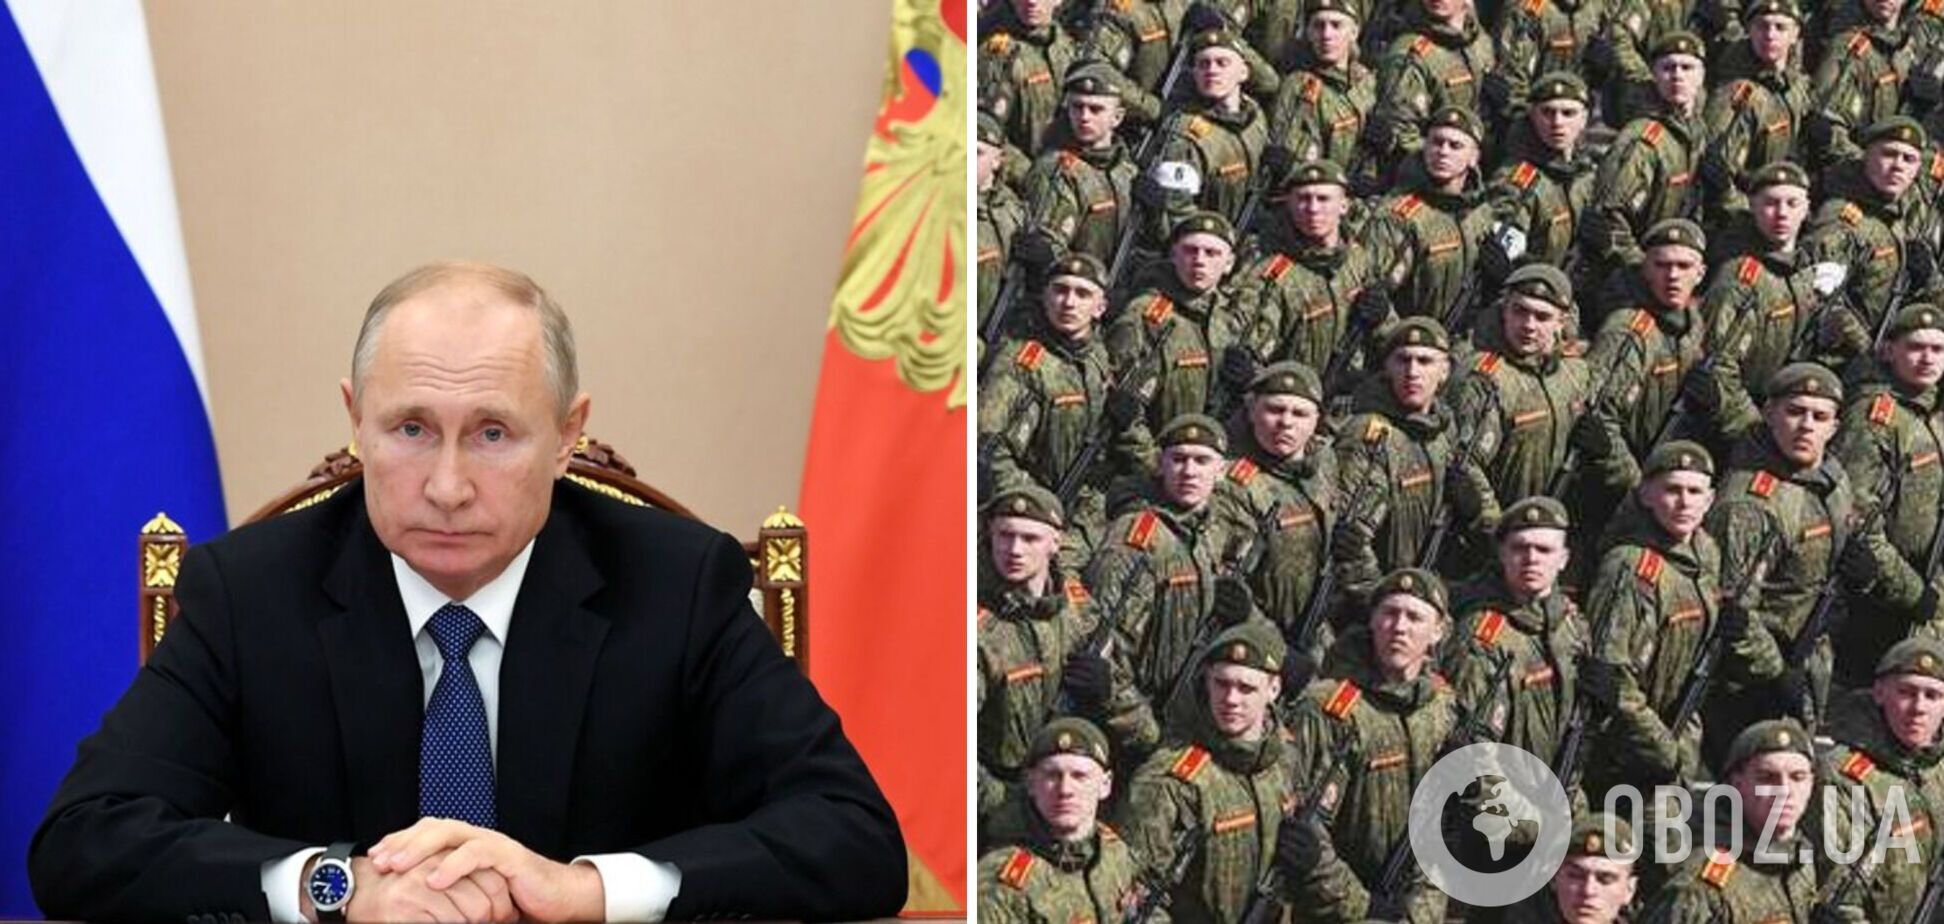 Плюс 137 тисяч: навіщо Путін збільшує армію?